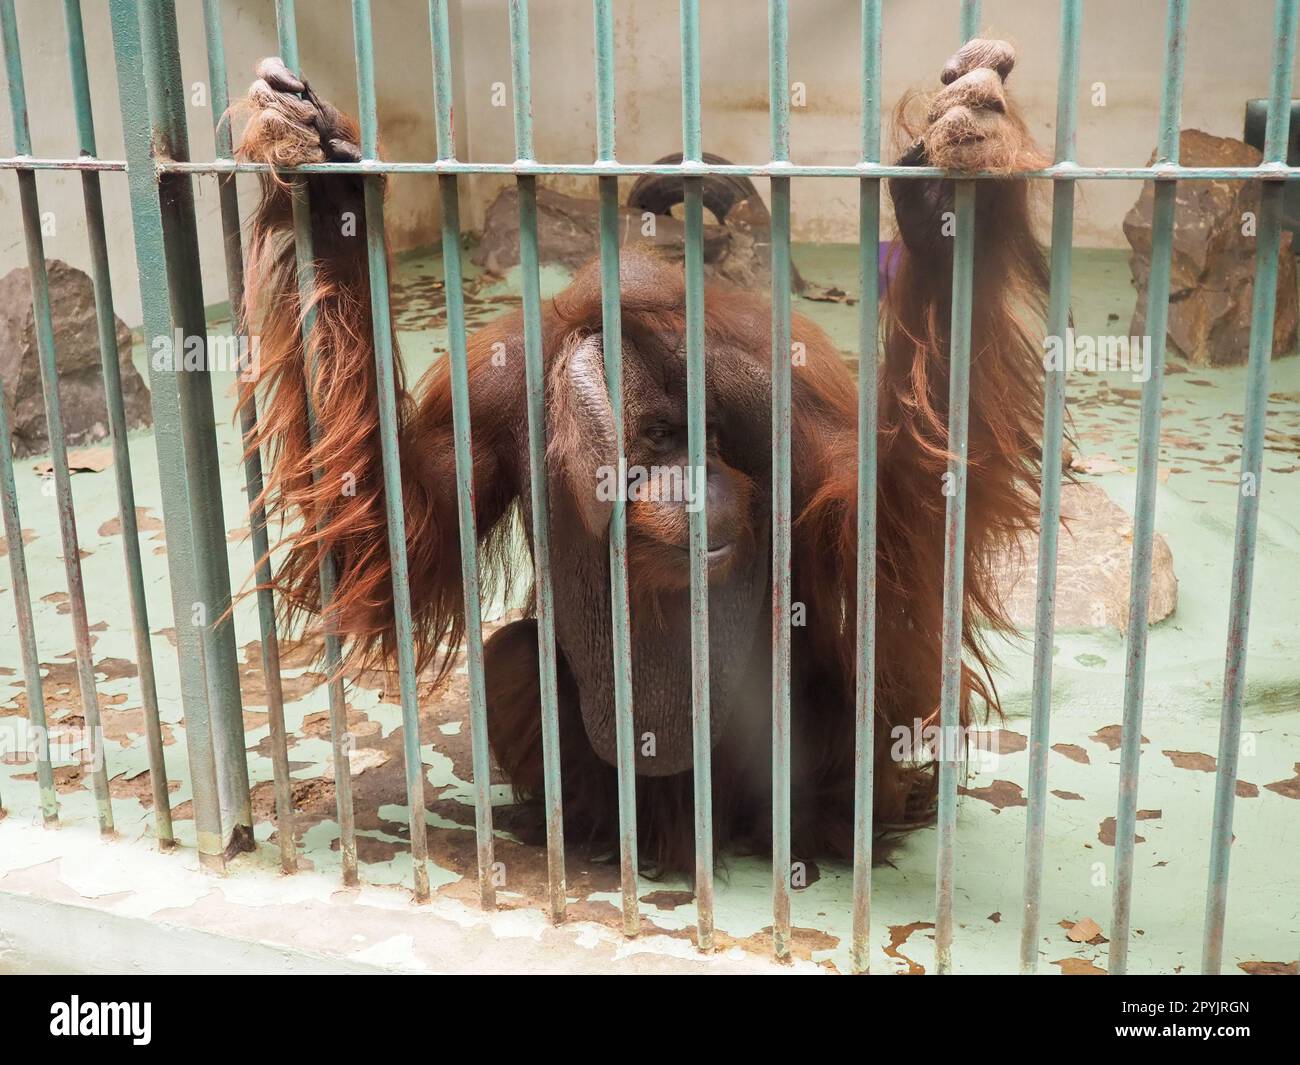 Ein sehr trauriger Orang-Utan hinter Gittern. Ein Affe mit roten Haaren sitzt und sehnt sich. Orang-Utans, Orang-Utans sind Waldmenschen, Pongo ist eine Gattung von Arborealaffen, die in der DNA-Homologie den Menschen am nächsten kommt. Stockfoto